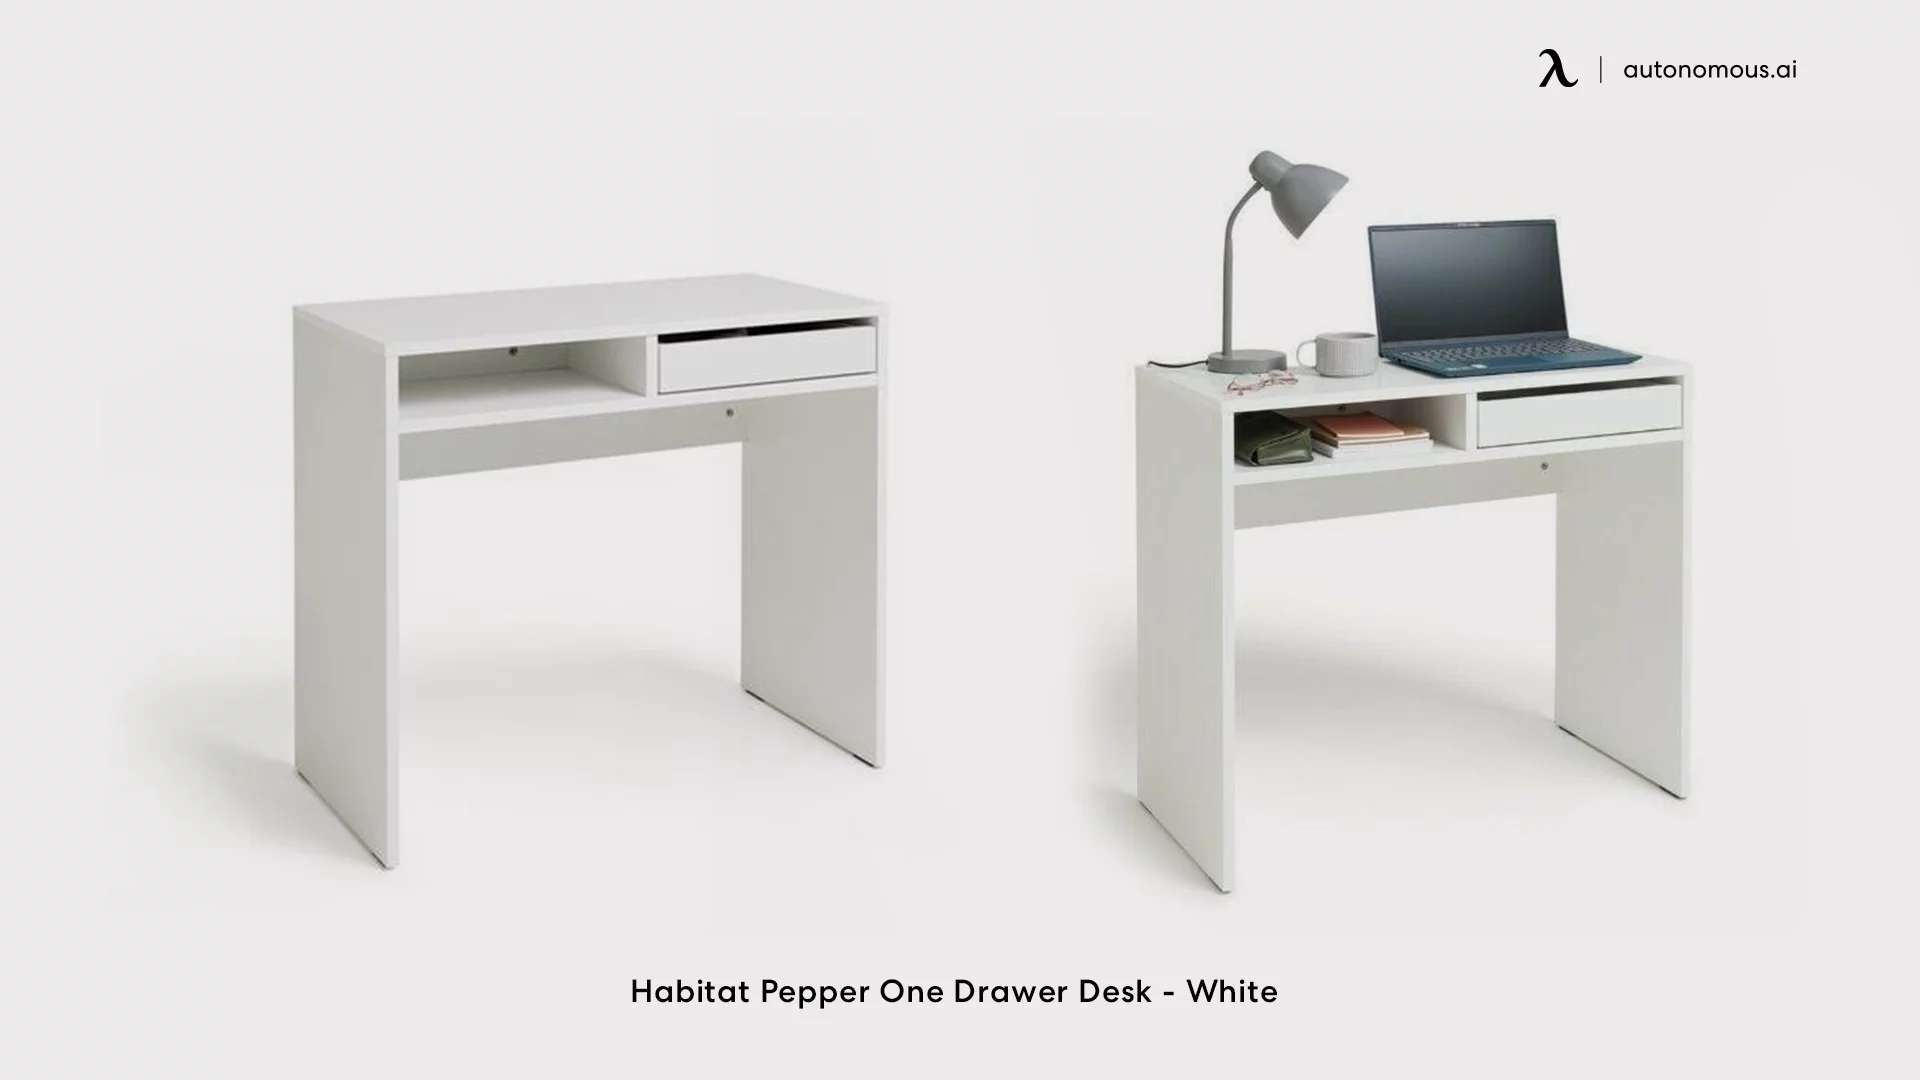 Habitat Pepper One Drawer Desk - White